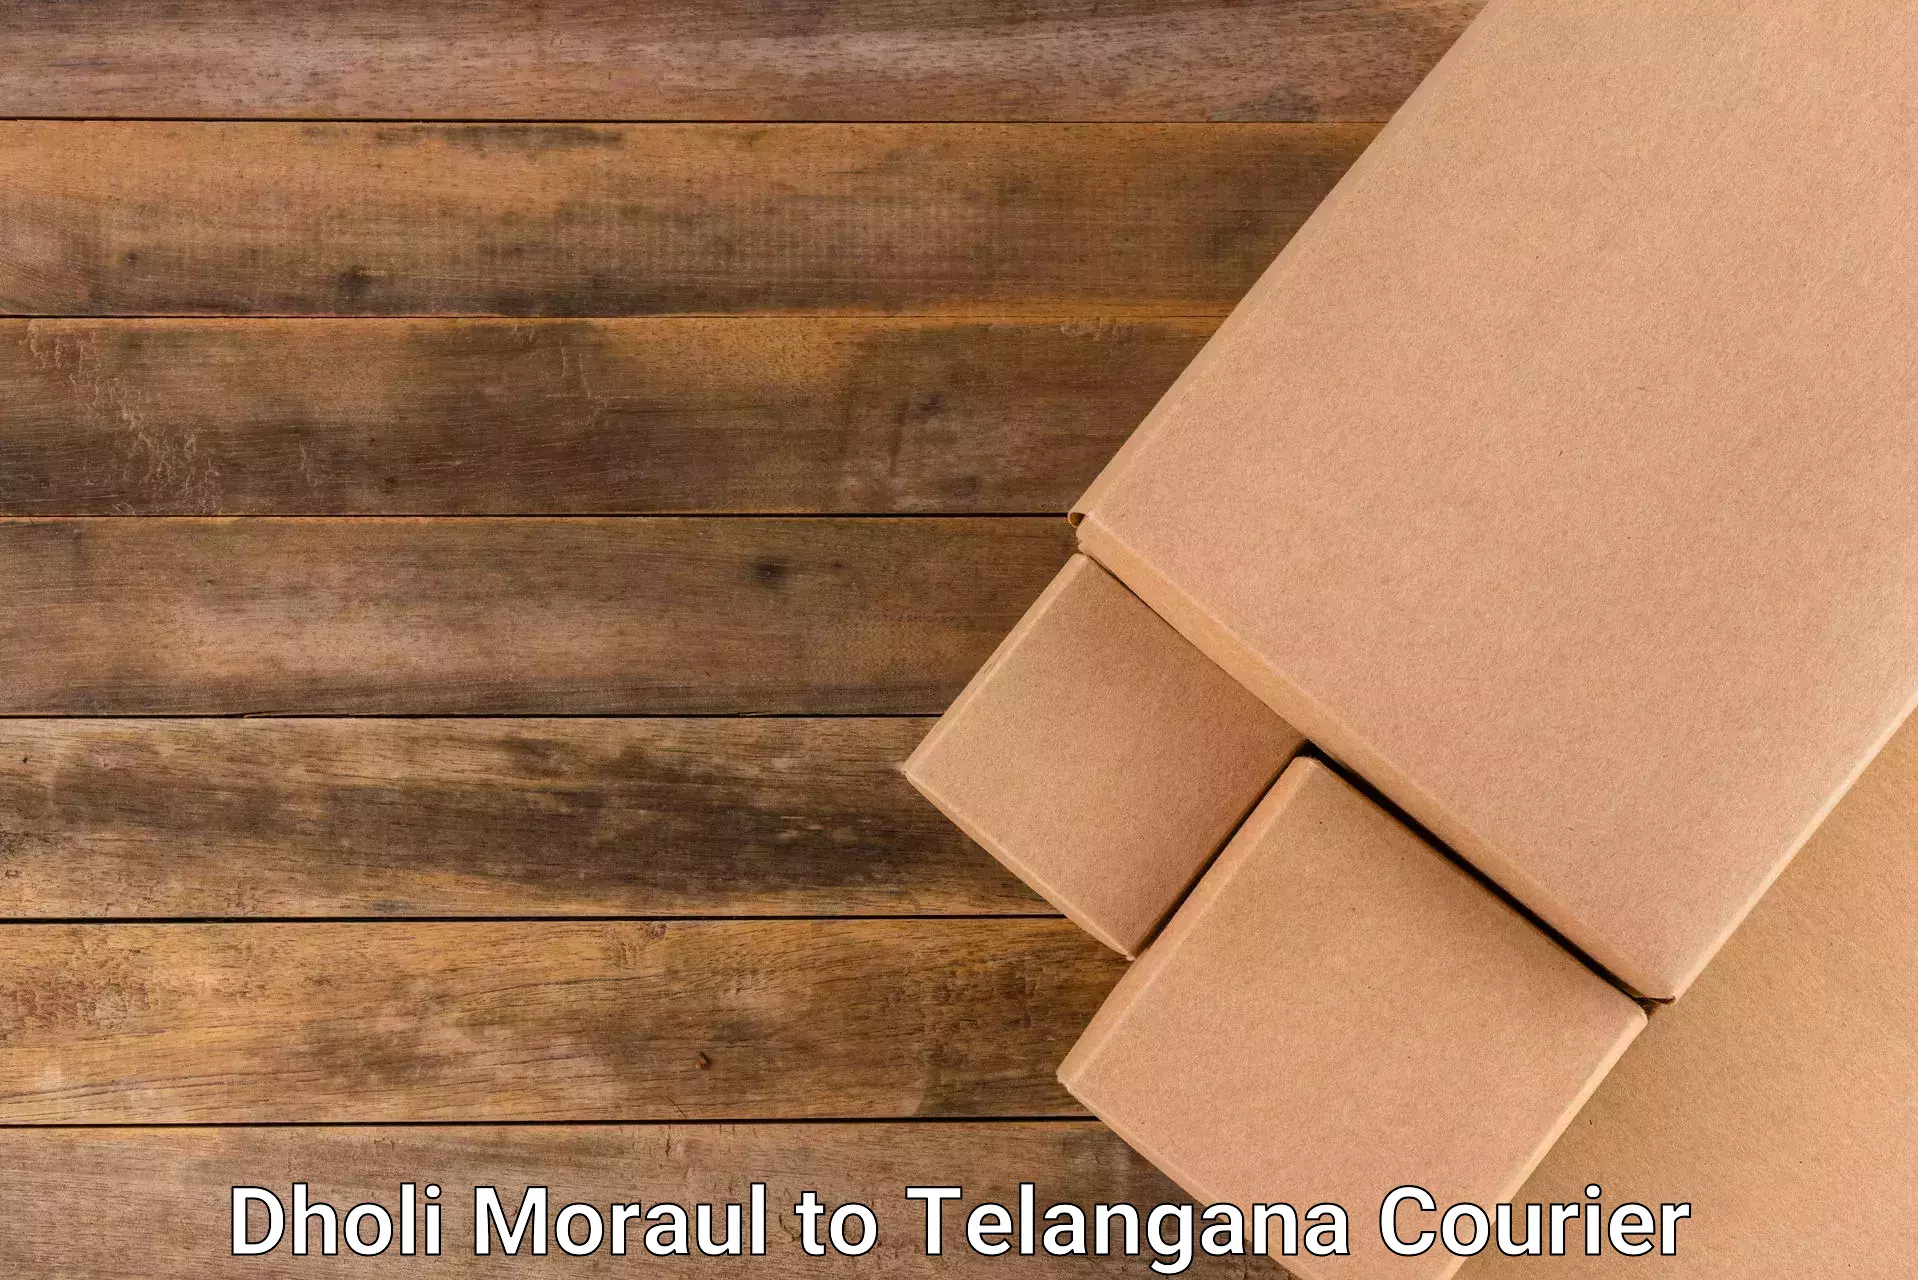 Efficient parcel transport Dholi Moraul to Jagtial